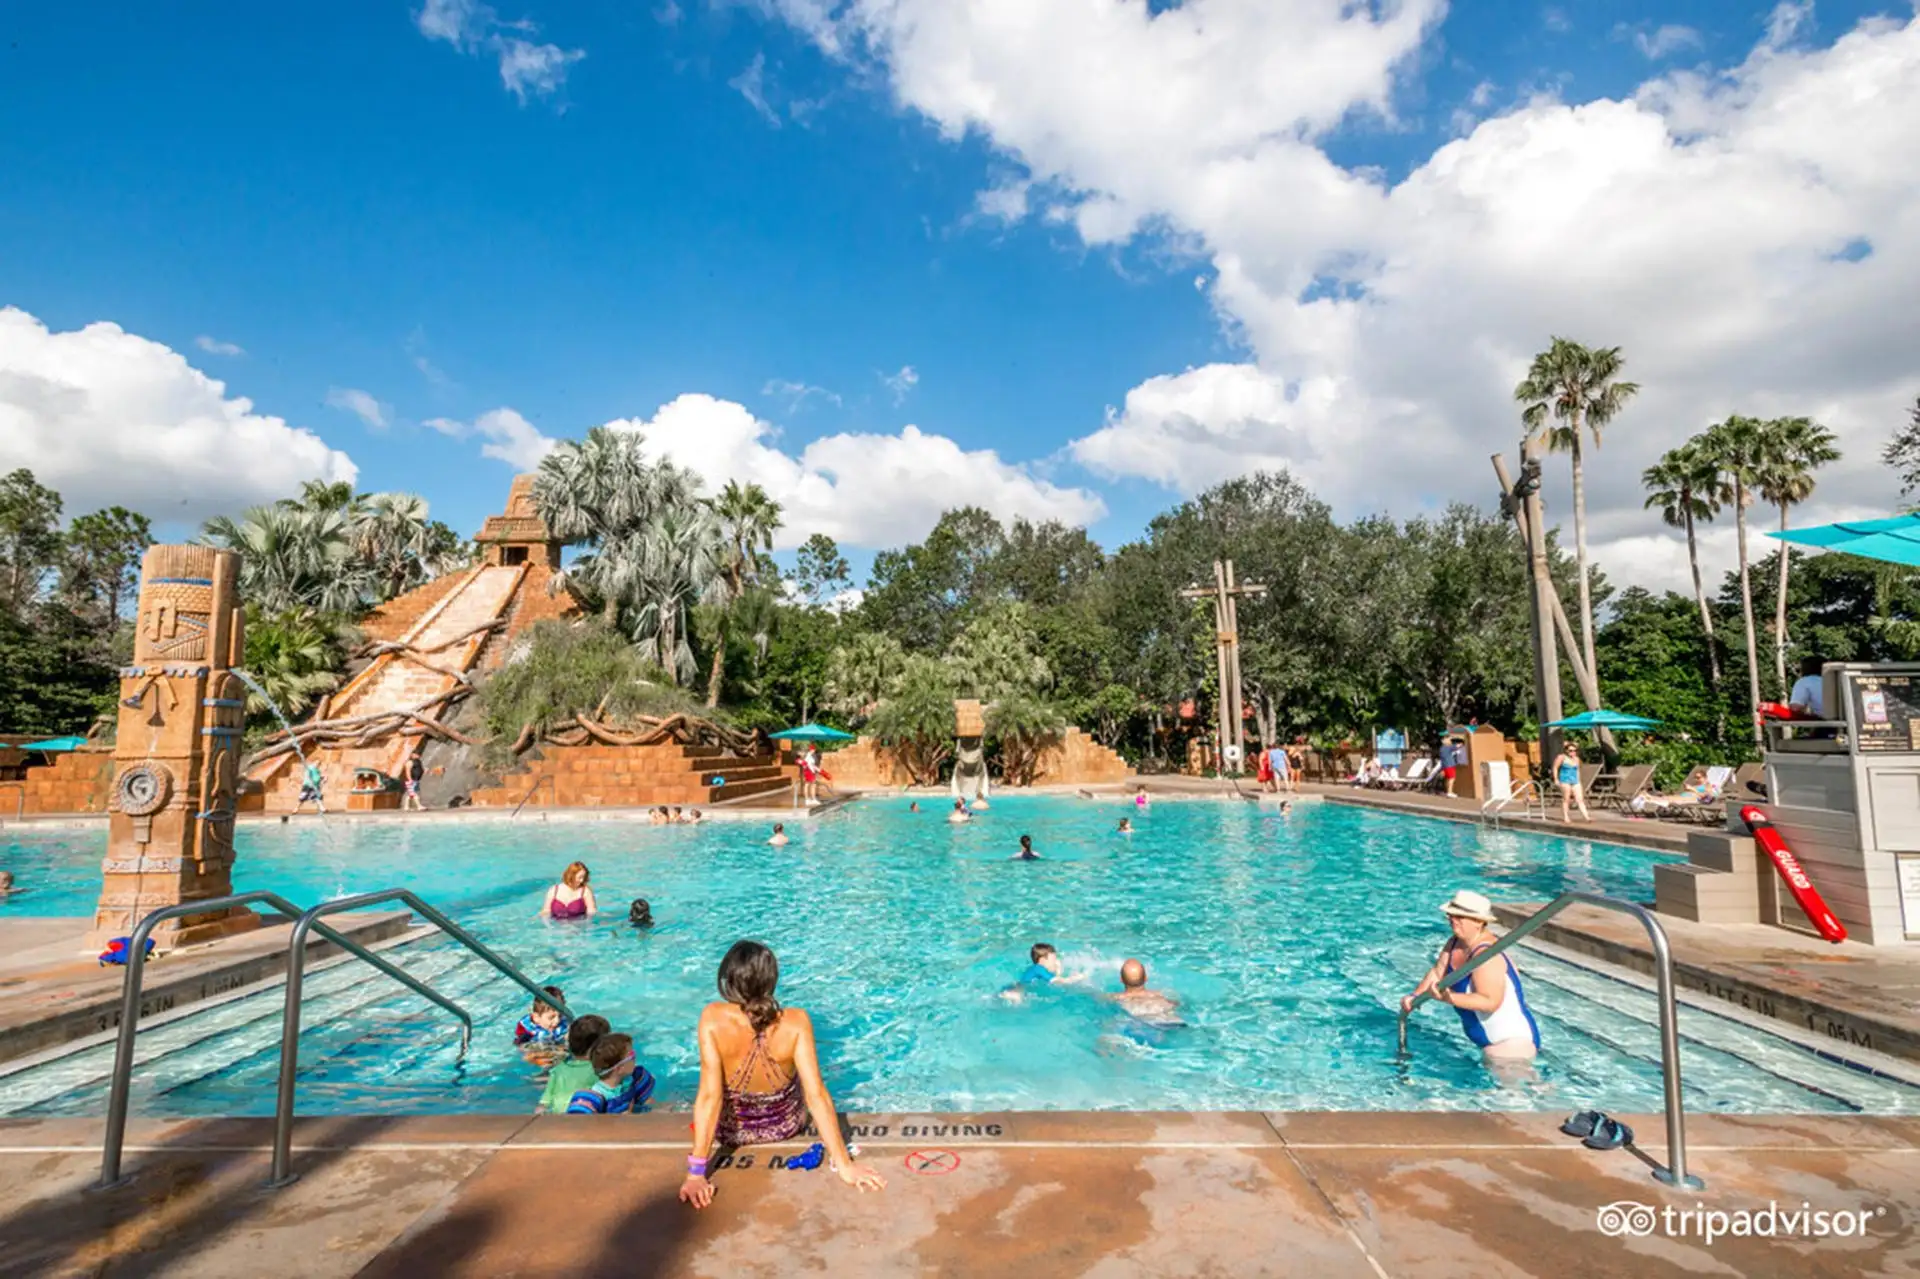 Lost City of Cibola Pool at Disney's Coronado Springs Resort